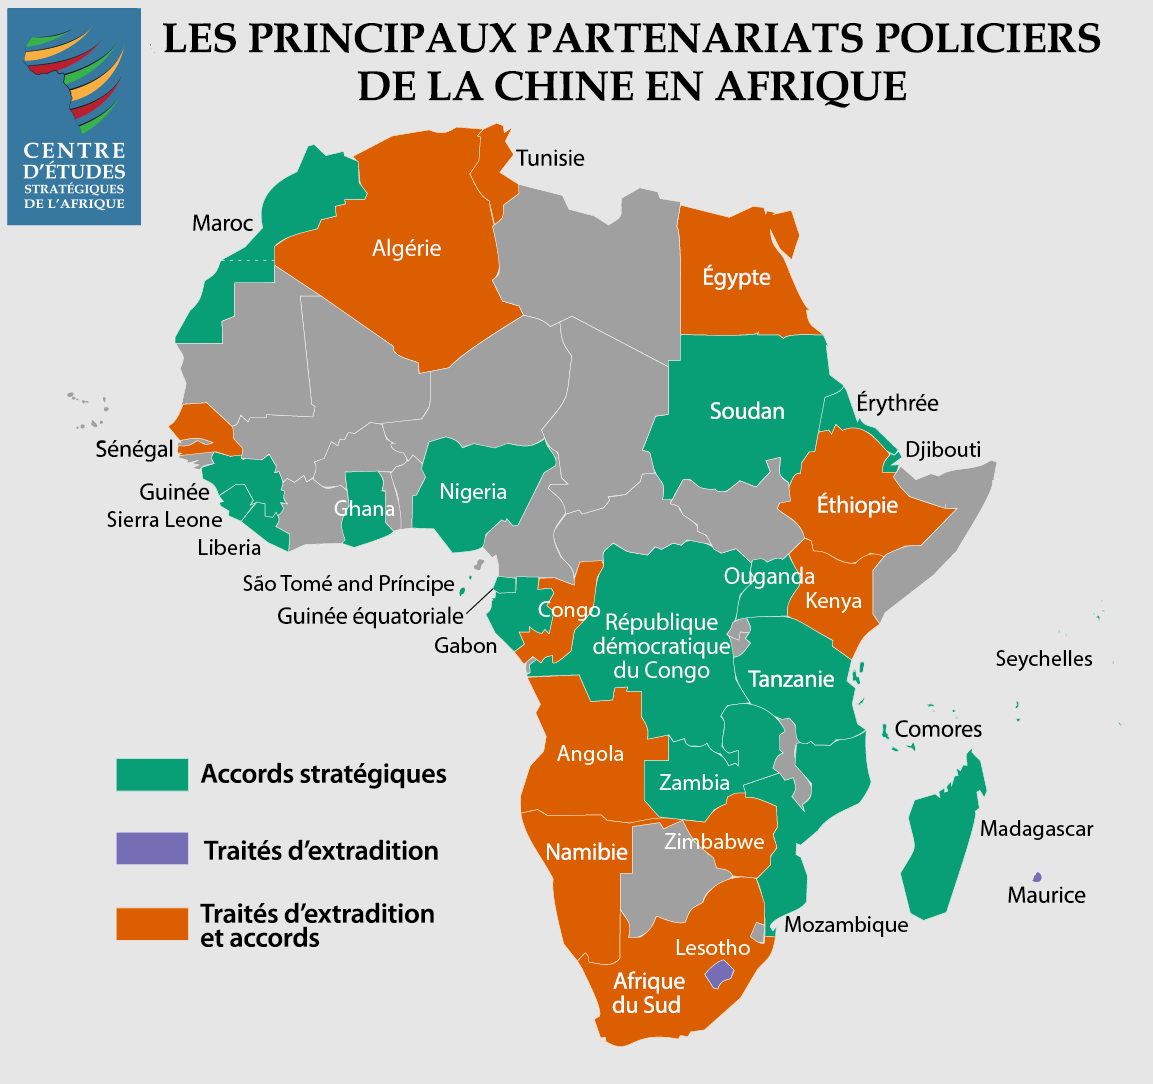 Les principaux partenariats policiers de la chine en Afrique